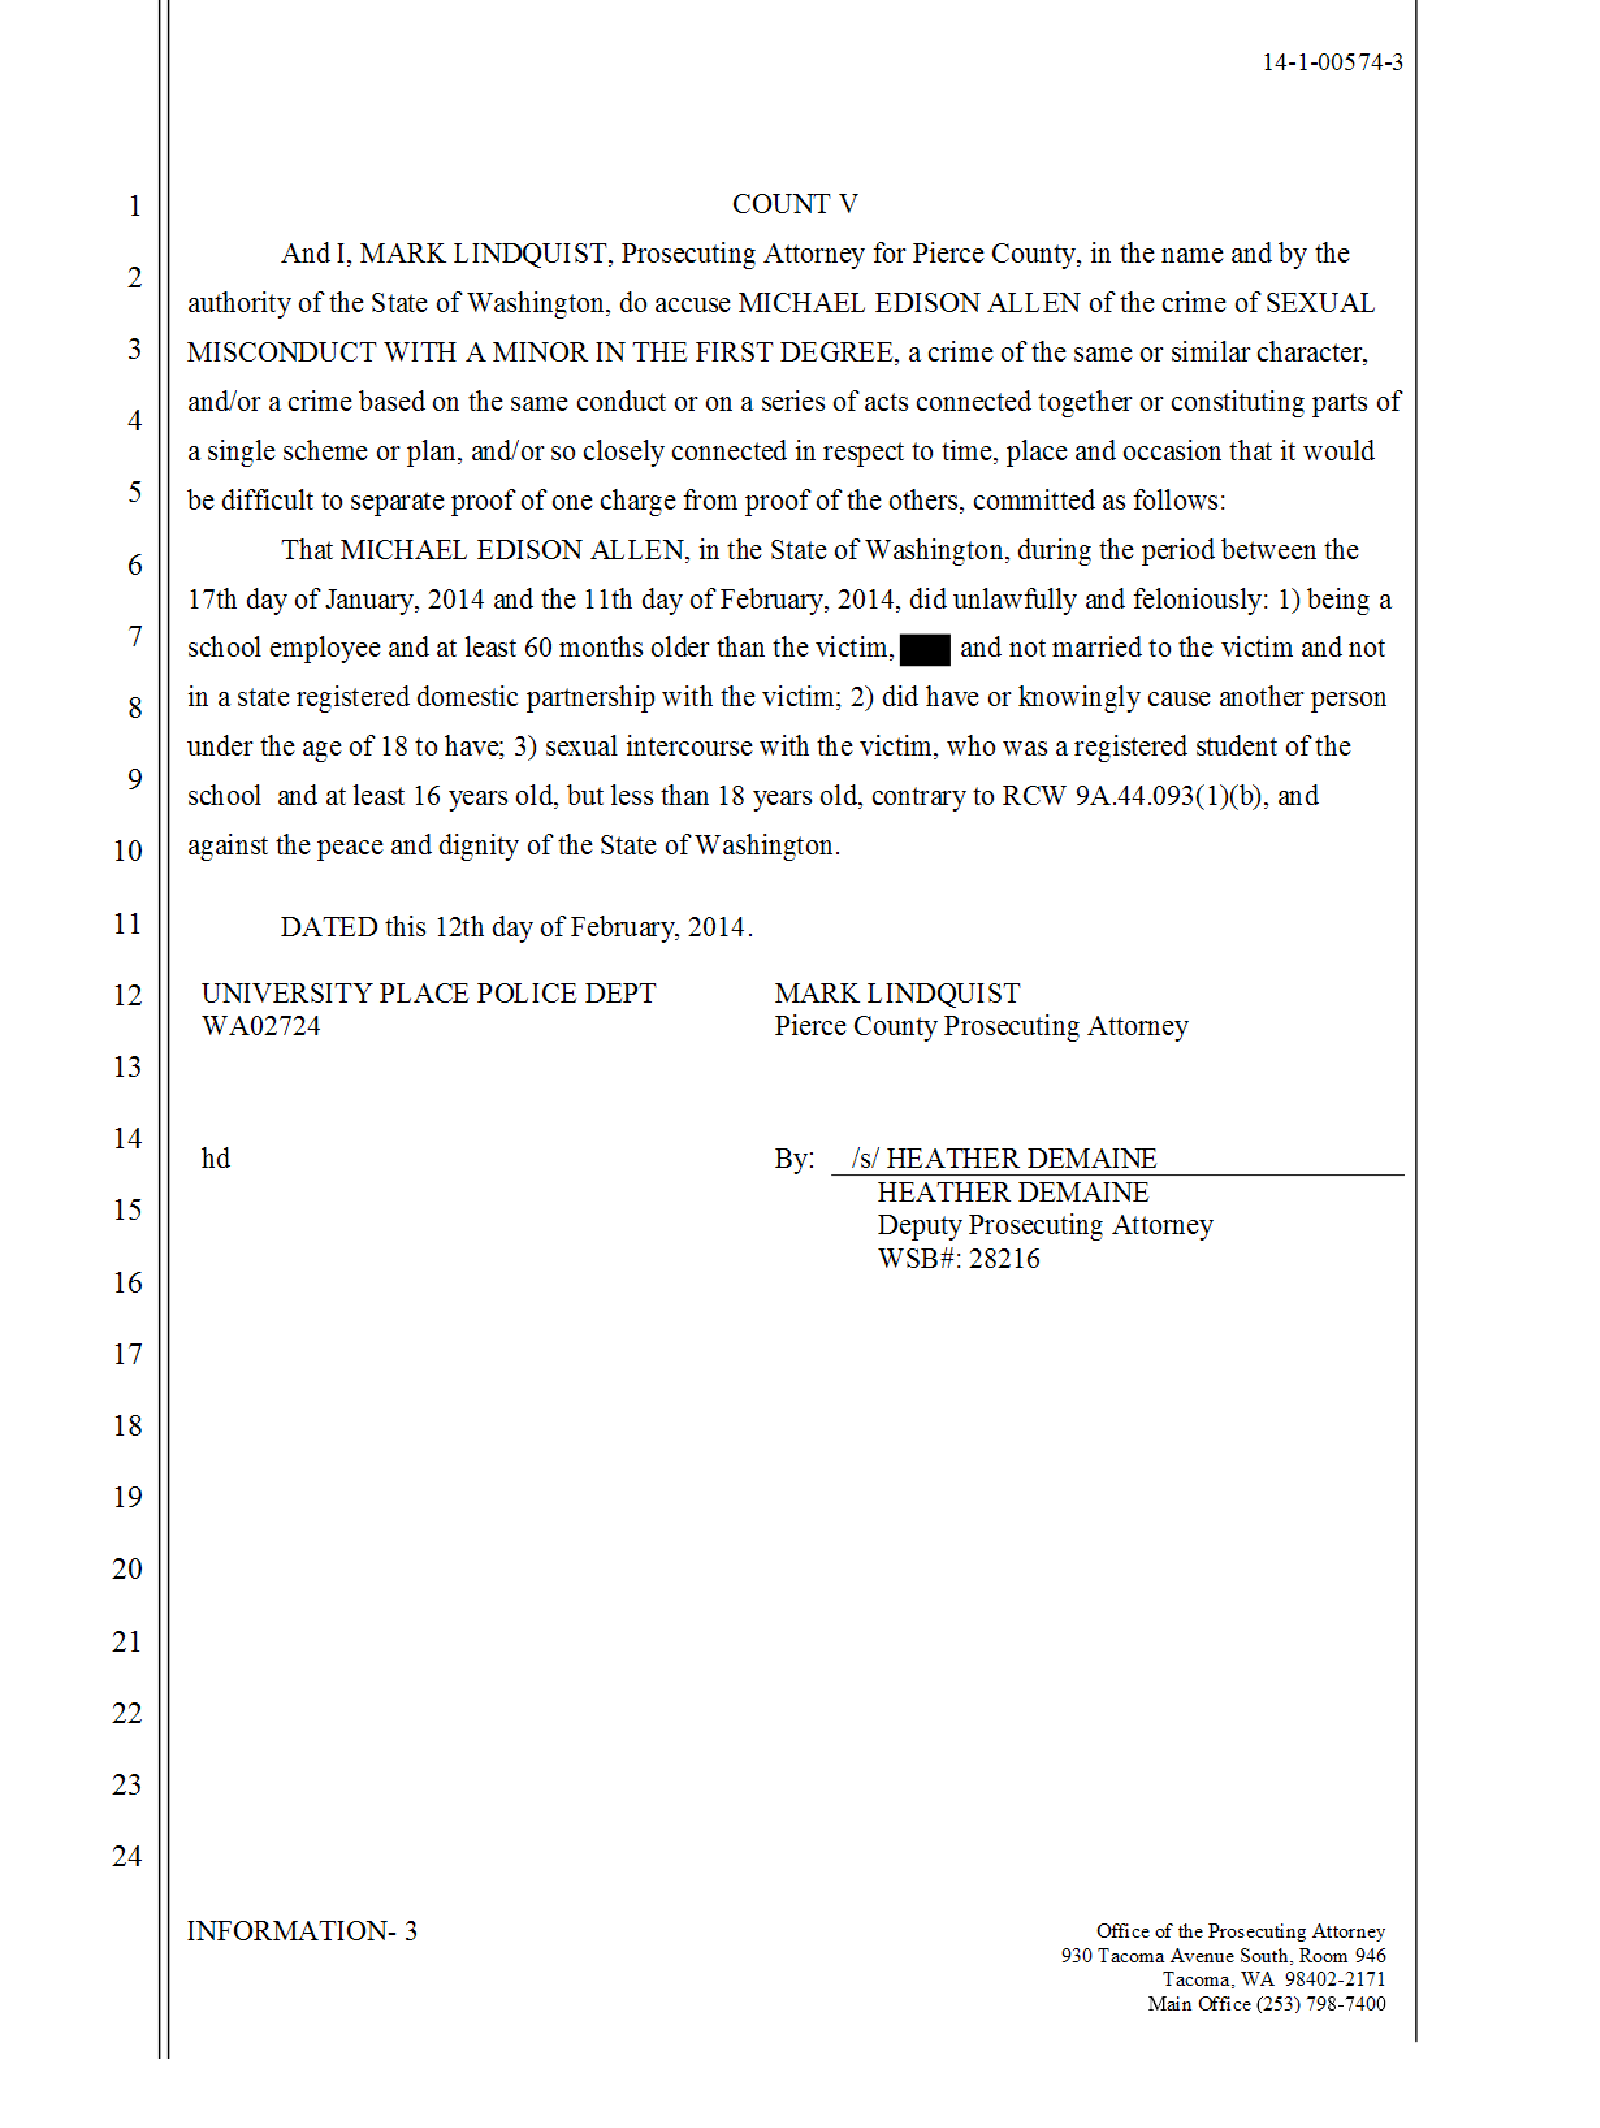 Copy of Allen Michael probable cause affidavit4.png